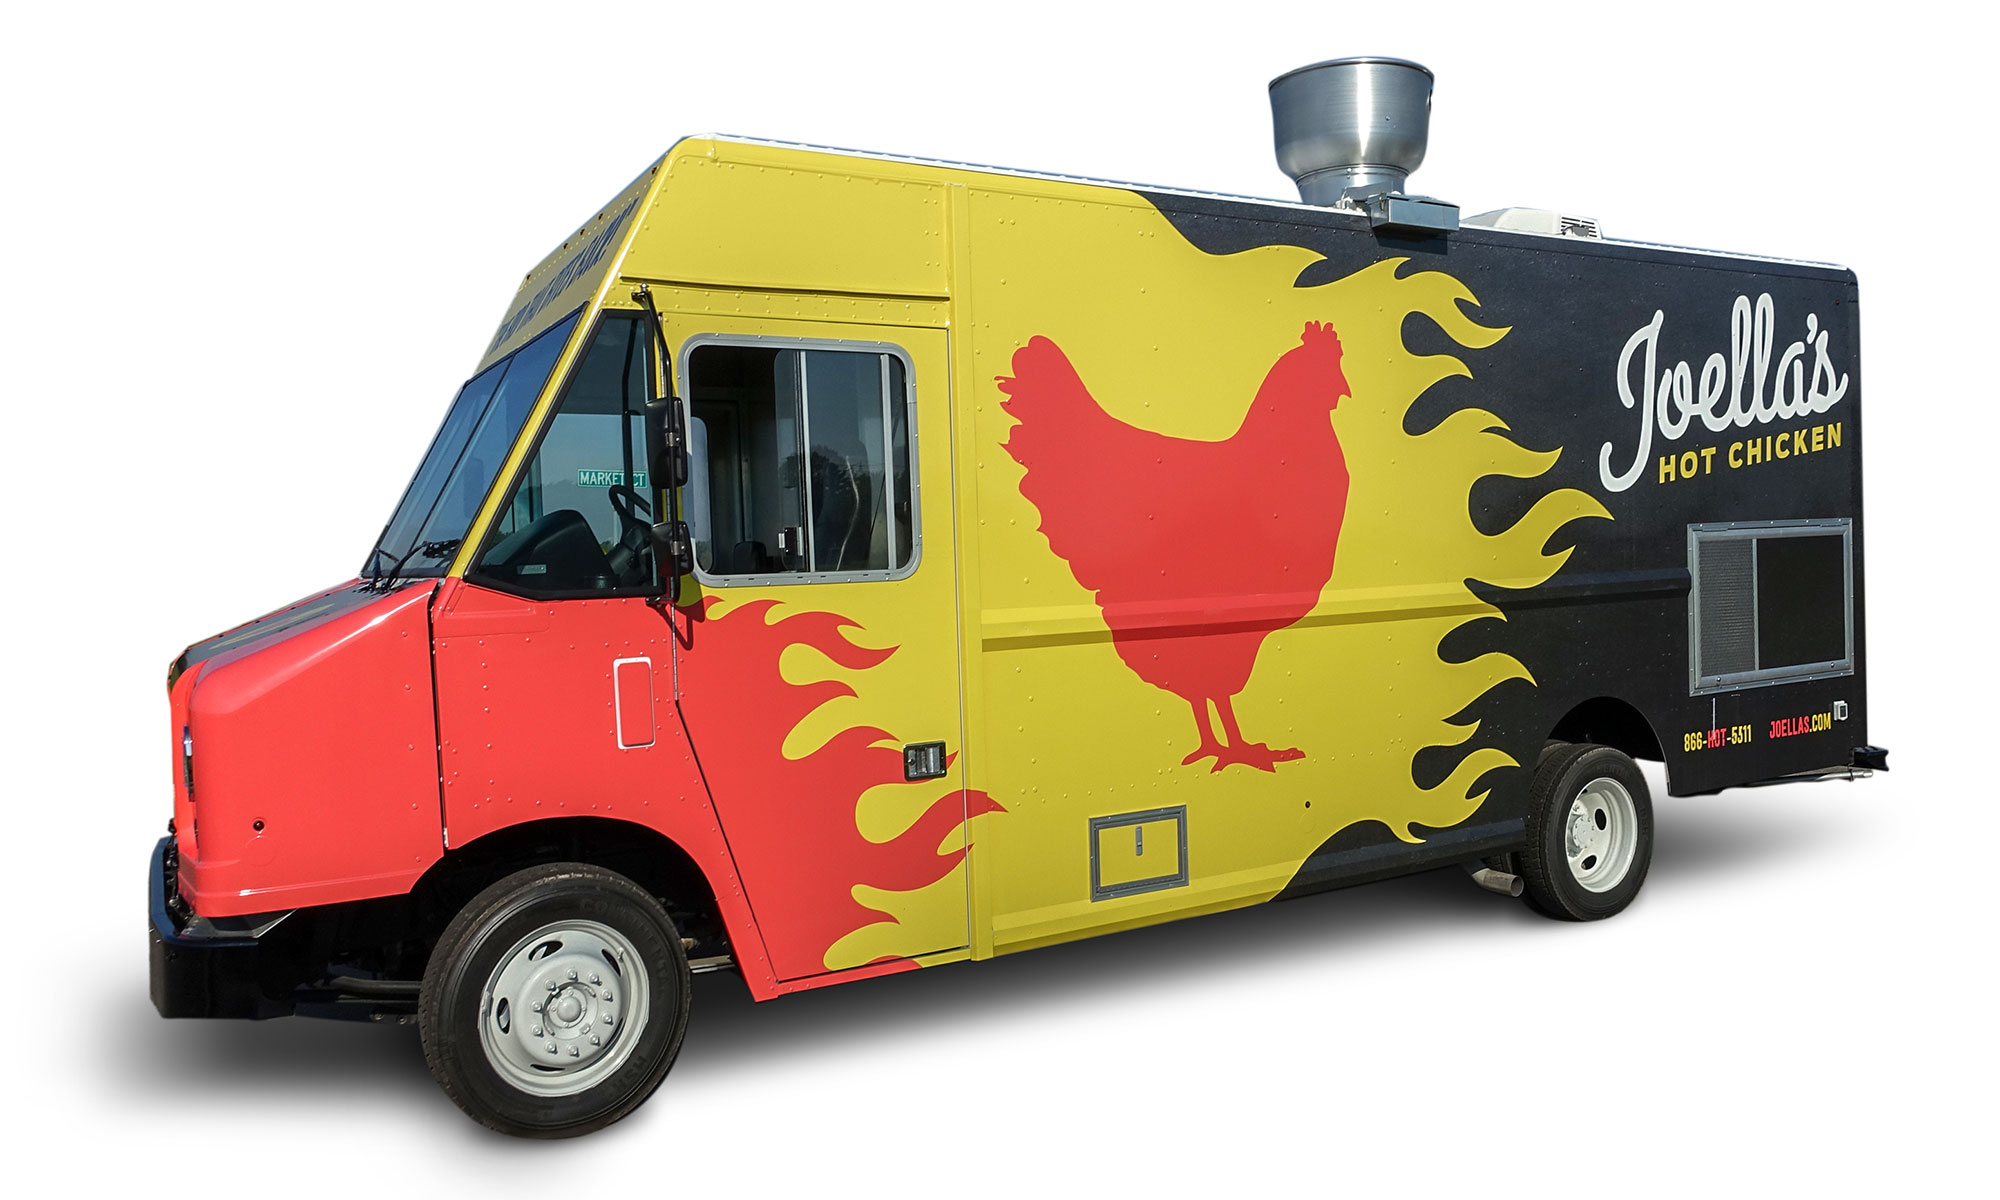 Chick'n lick'n food truck